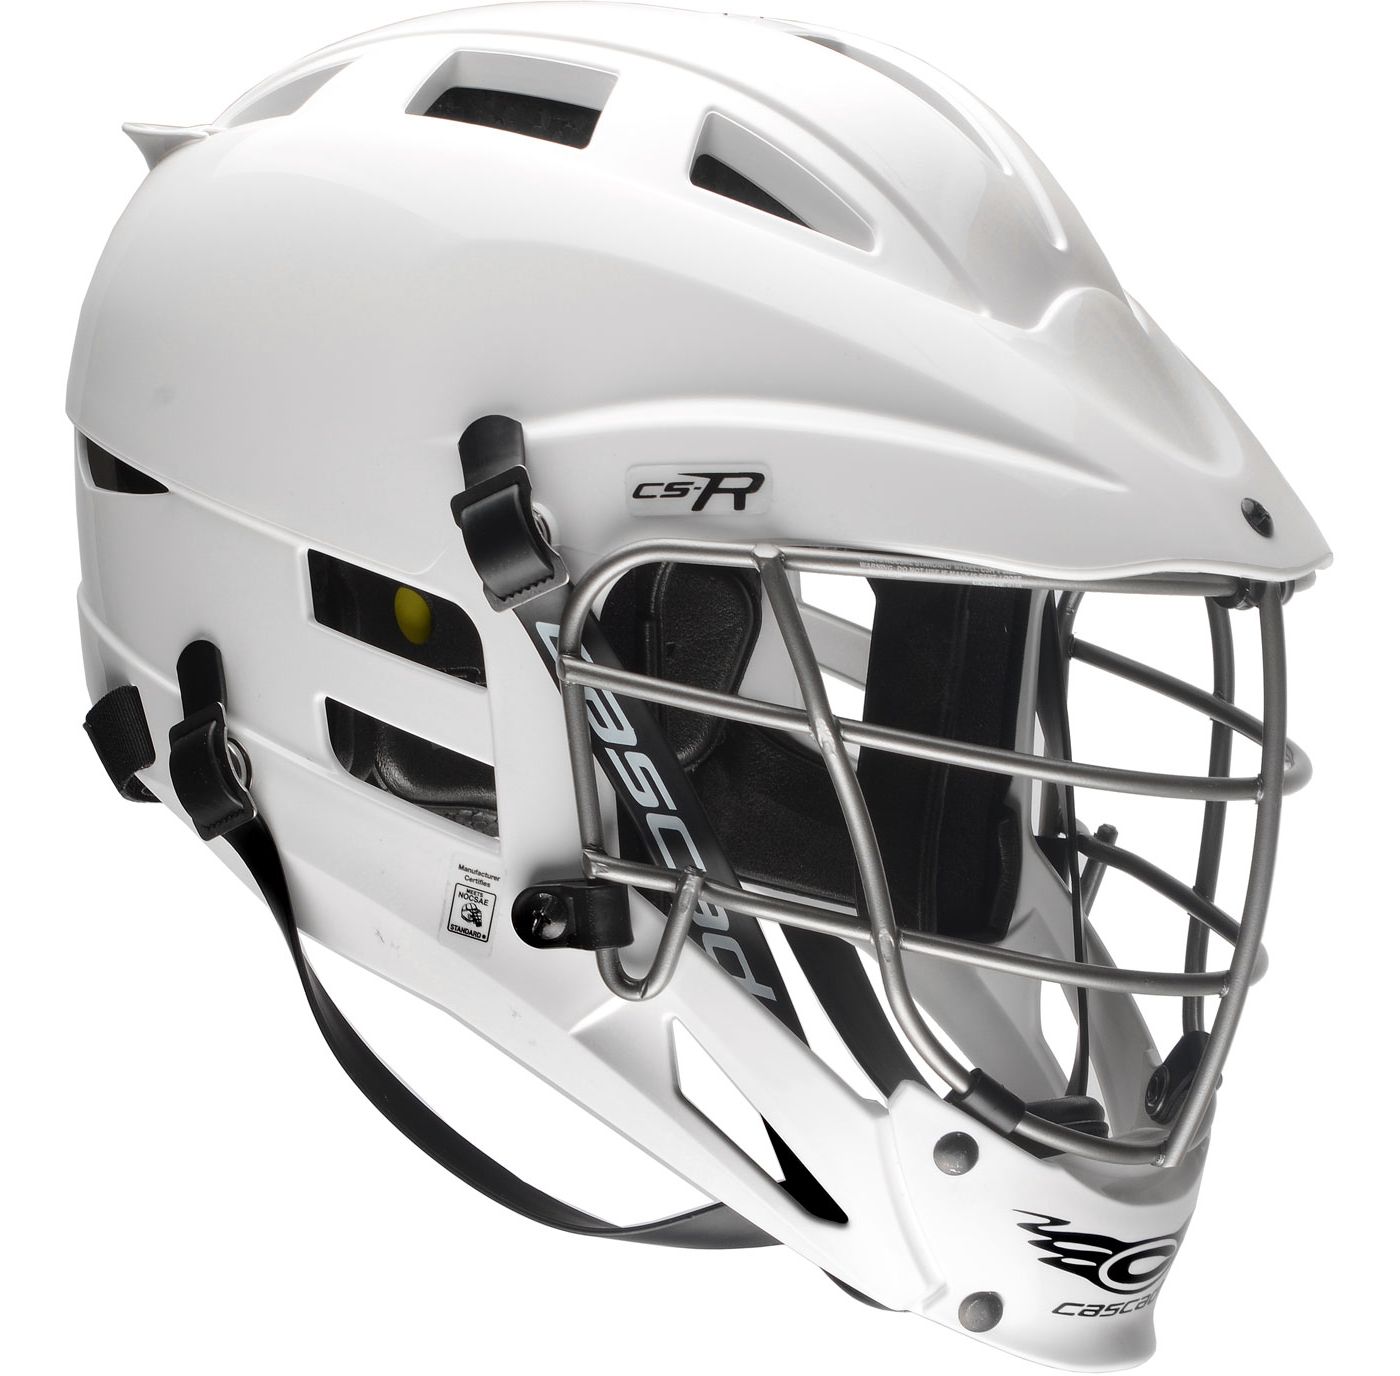 Cascade Youth CSR Lacrosse Helmet w/ Silver Mask DICK'S Sporting Goods